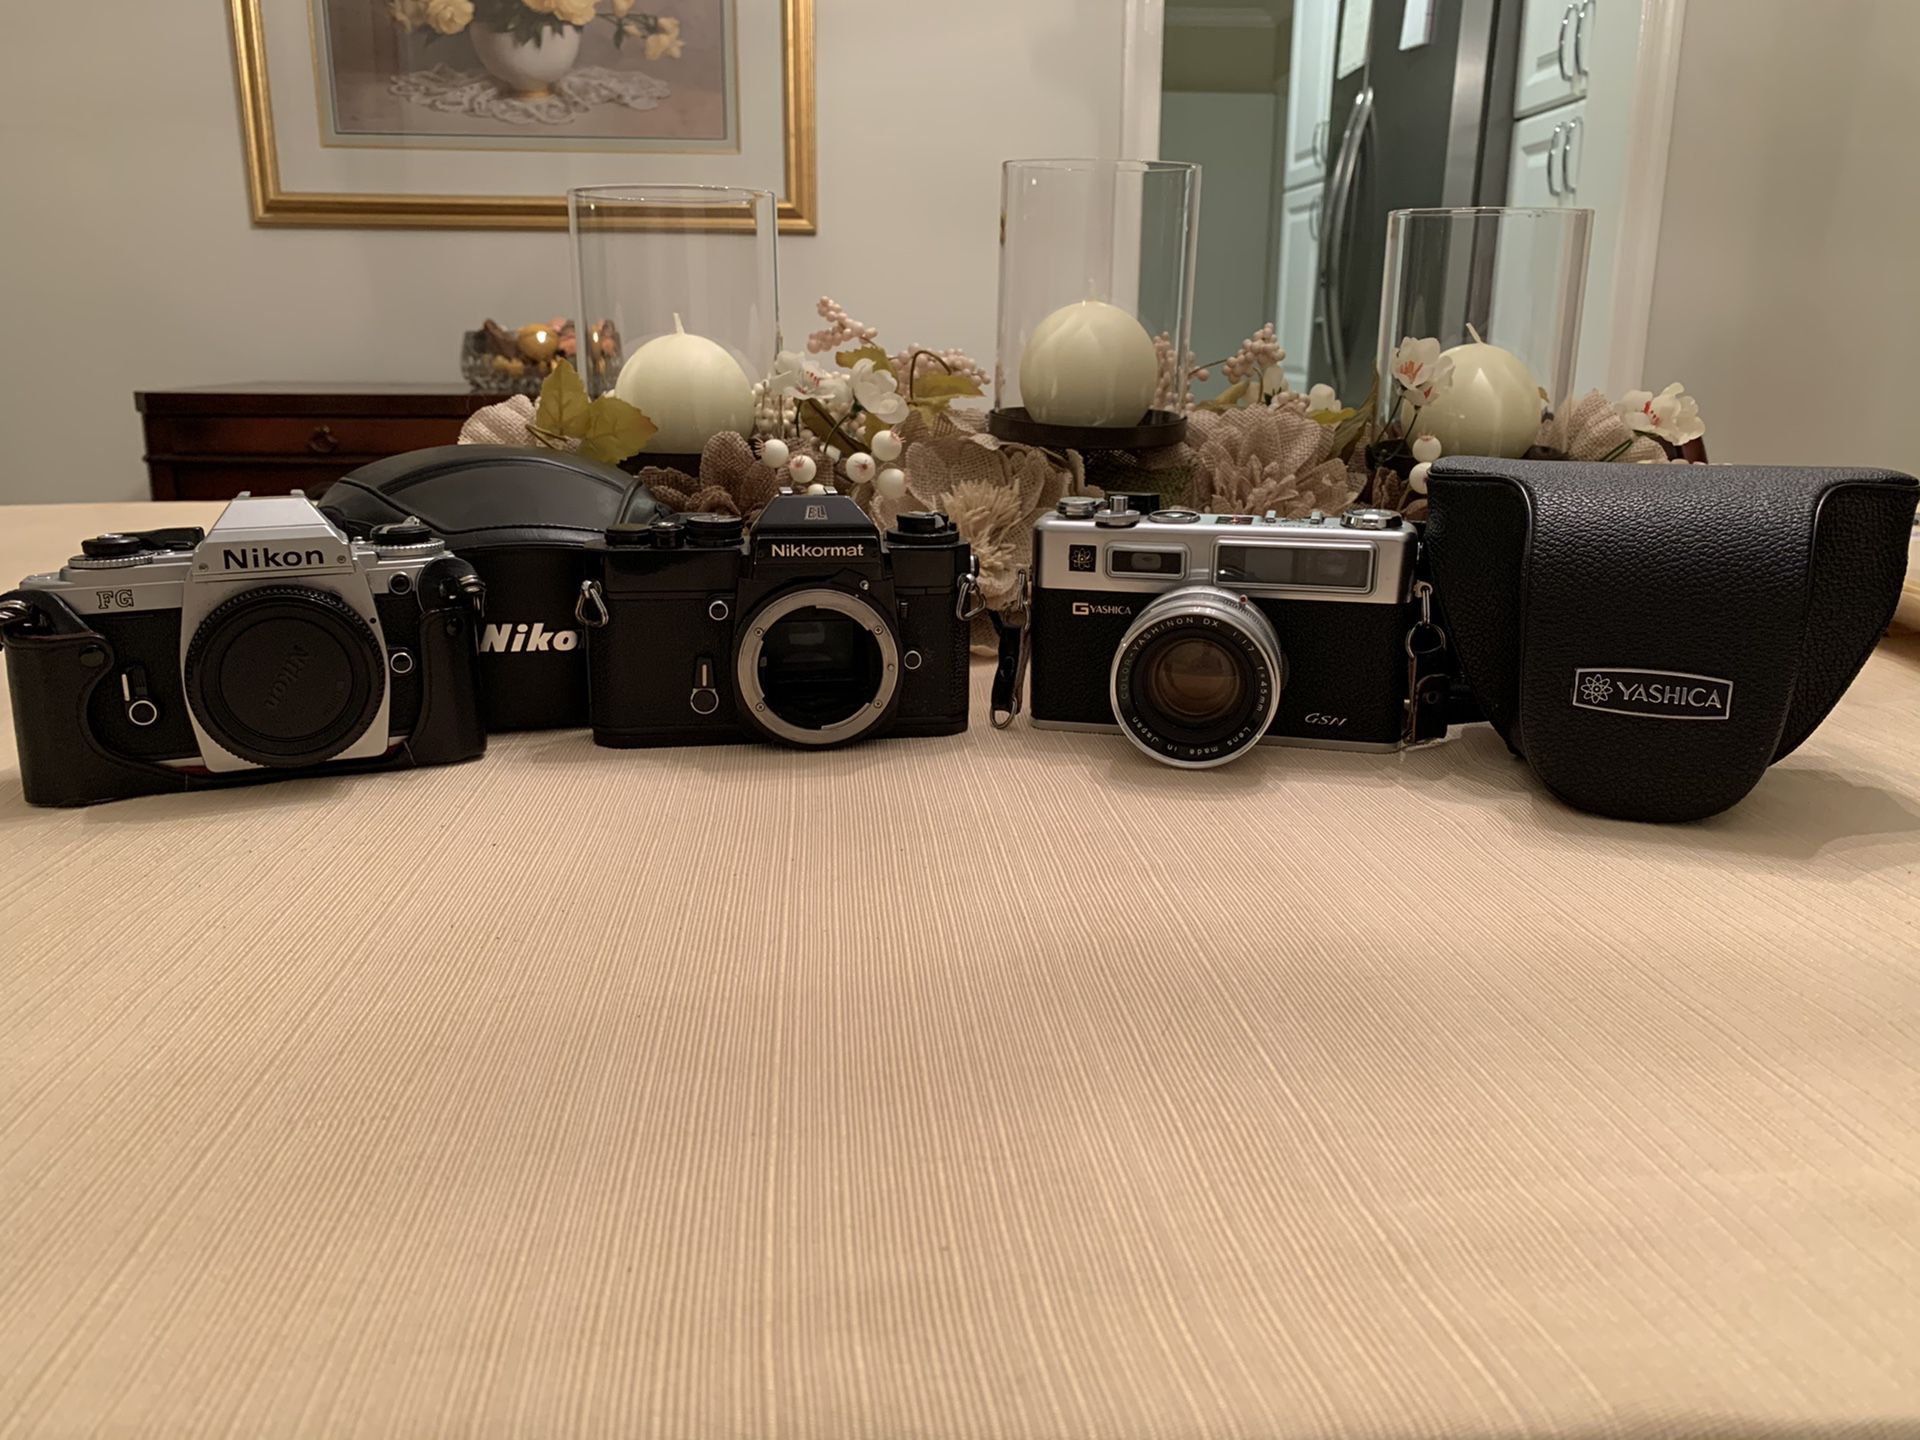 Nikon and Yashica film cameras